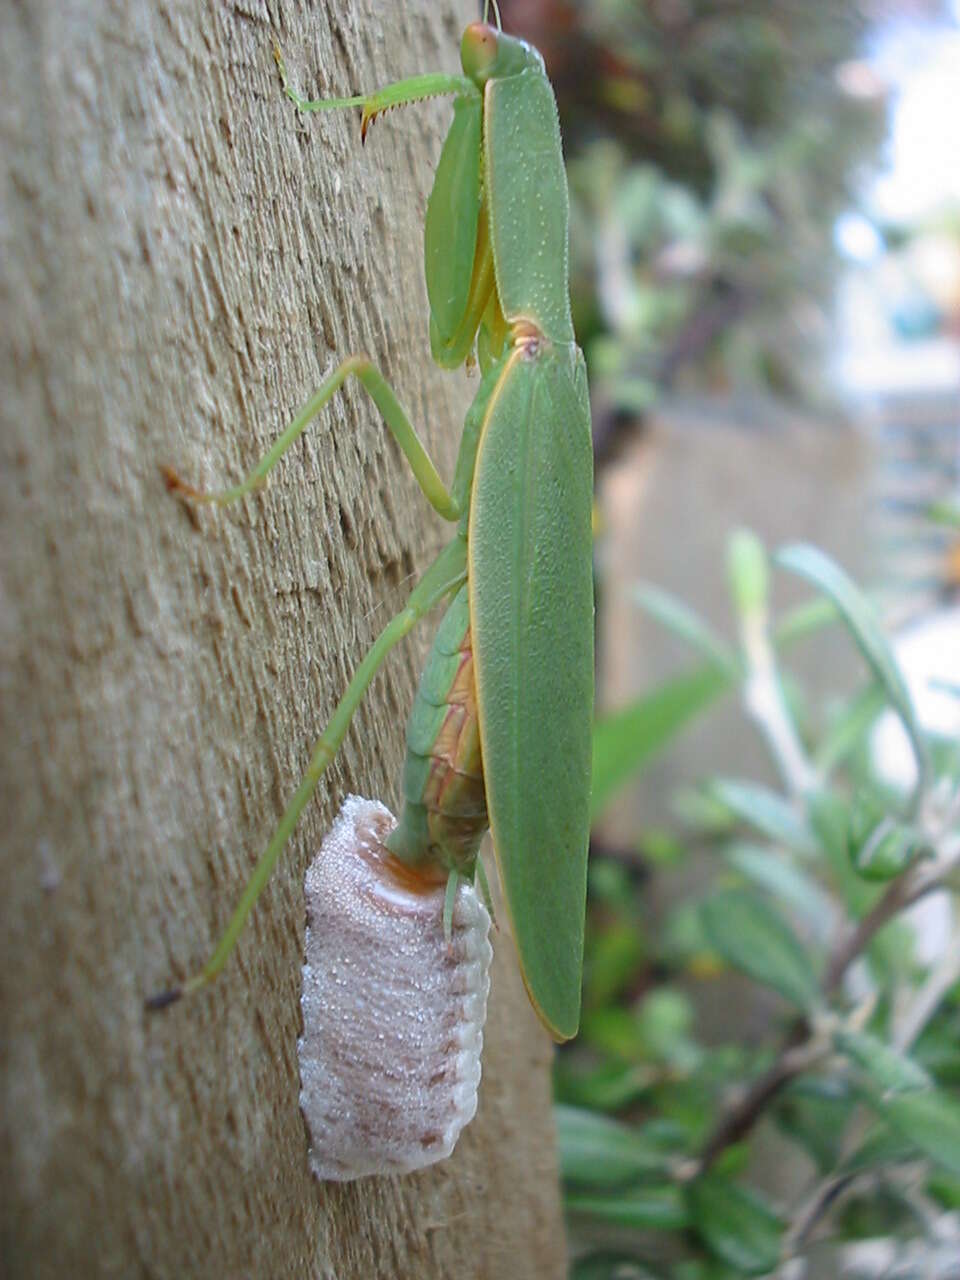 Image of New Zealand mantis